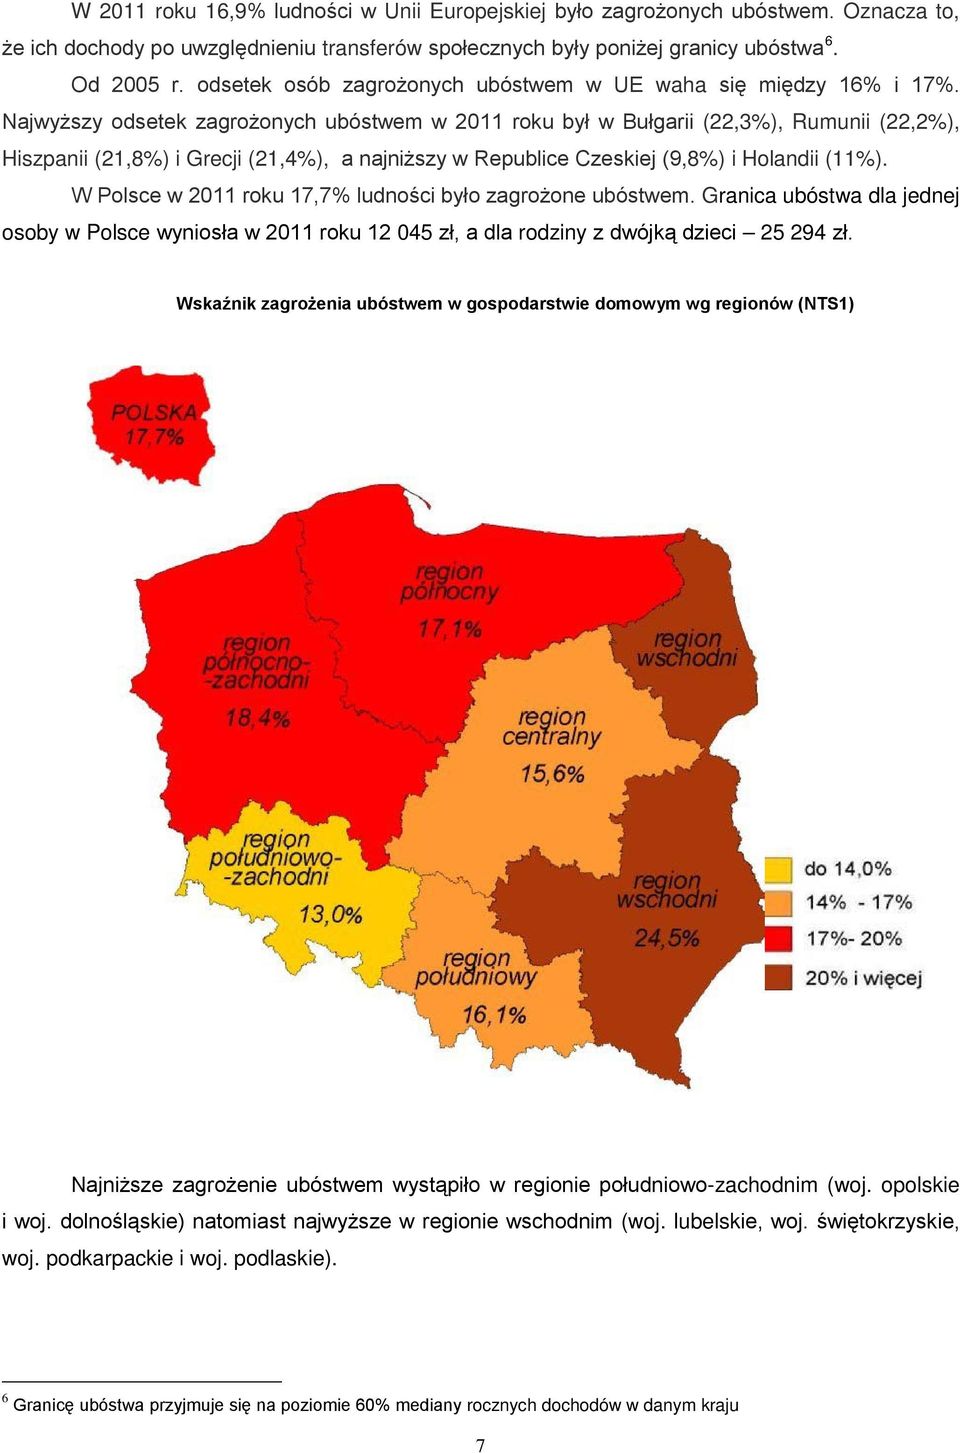 Najwyższy odsetek zagrożonych ubóstwem w 2011 roku był w Bułgarii (22,3%), Rumunii (22,2%), Hiszpanii (21,8%) i Grecji (21,4%), a najniższy w Republice Czeskiej (9,8%) i Holandii (11%).